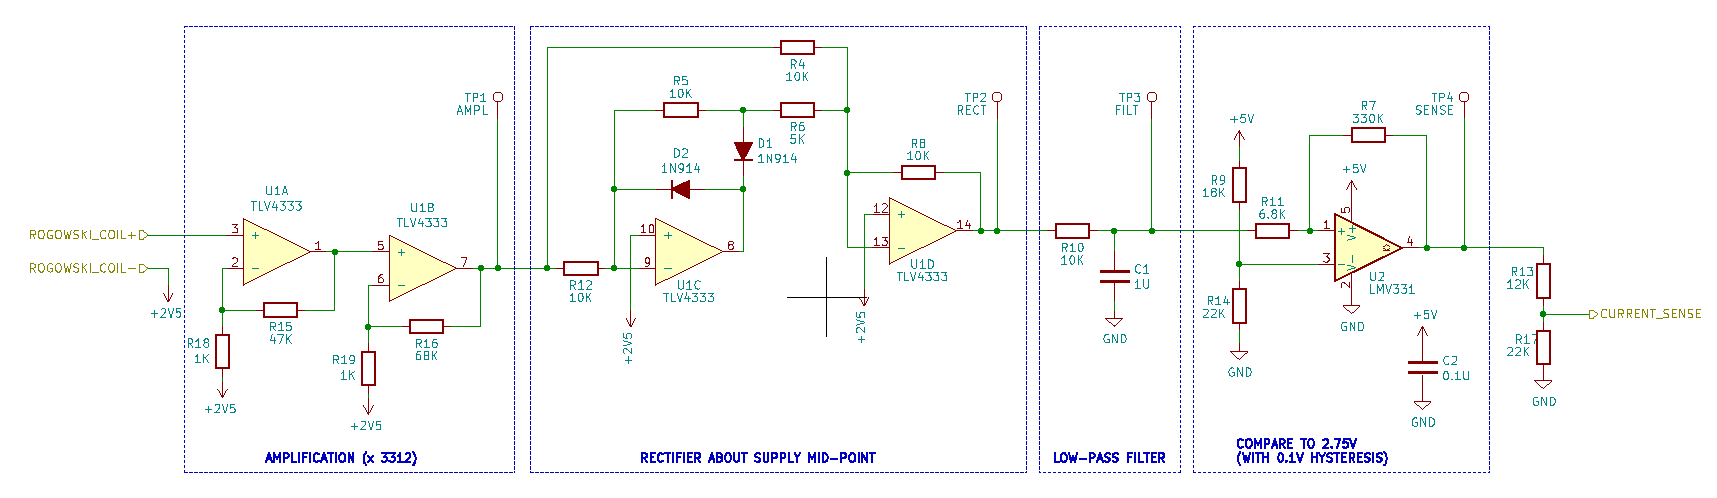 Current sense circuit design